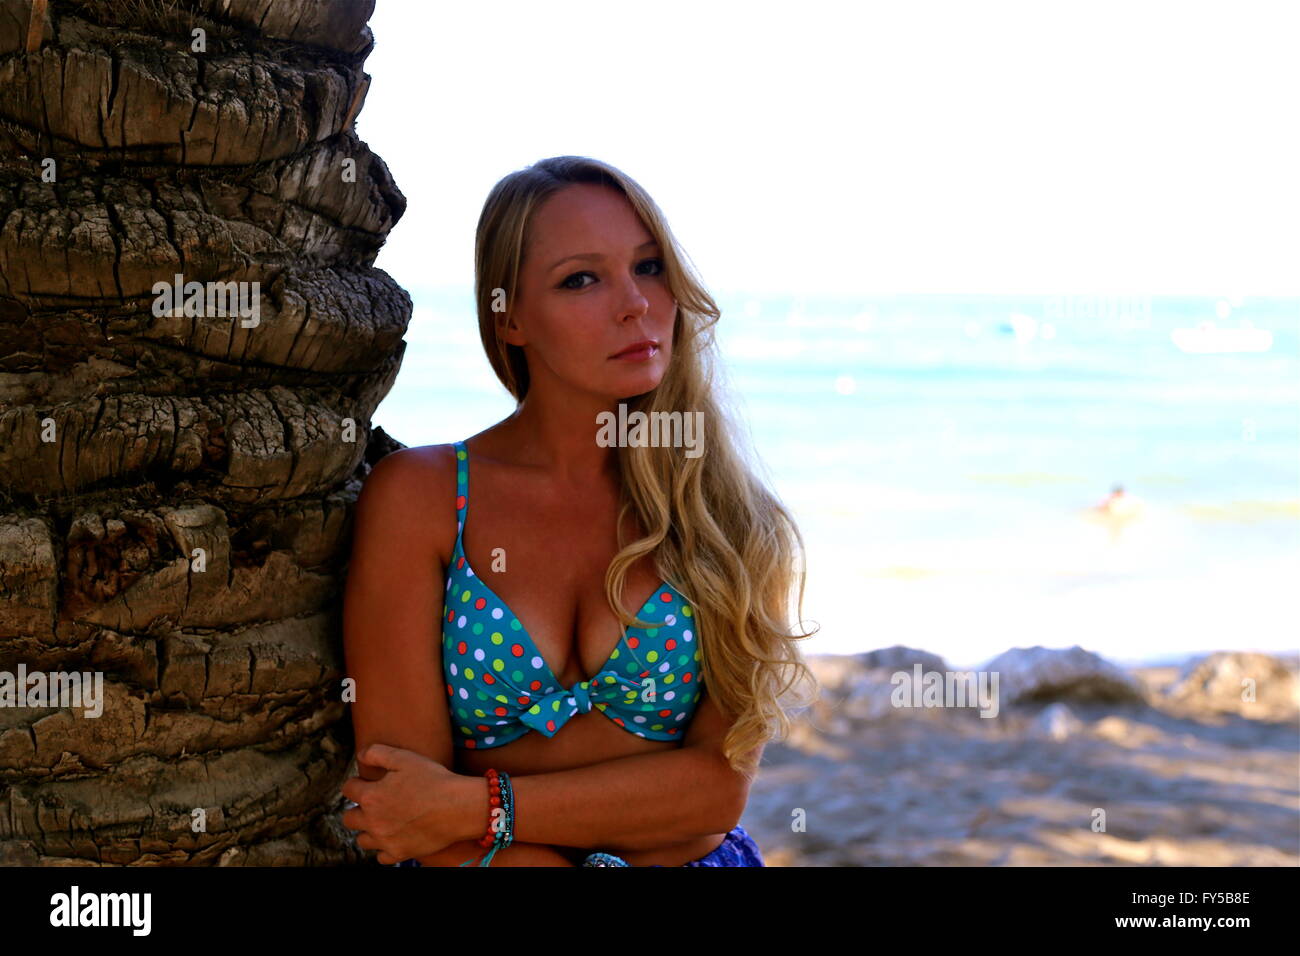 Polka dot bikini hi-res stock photography and images - Alamy